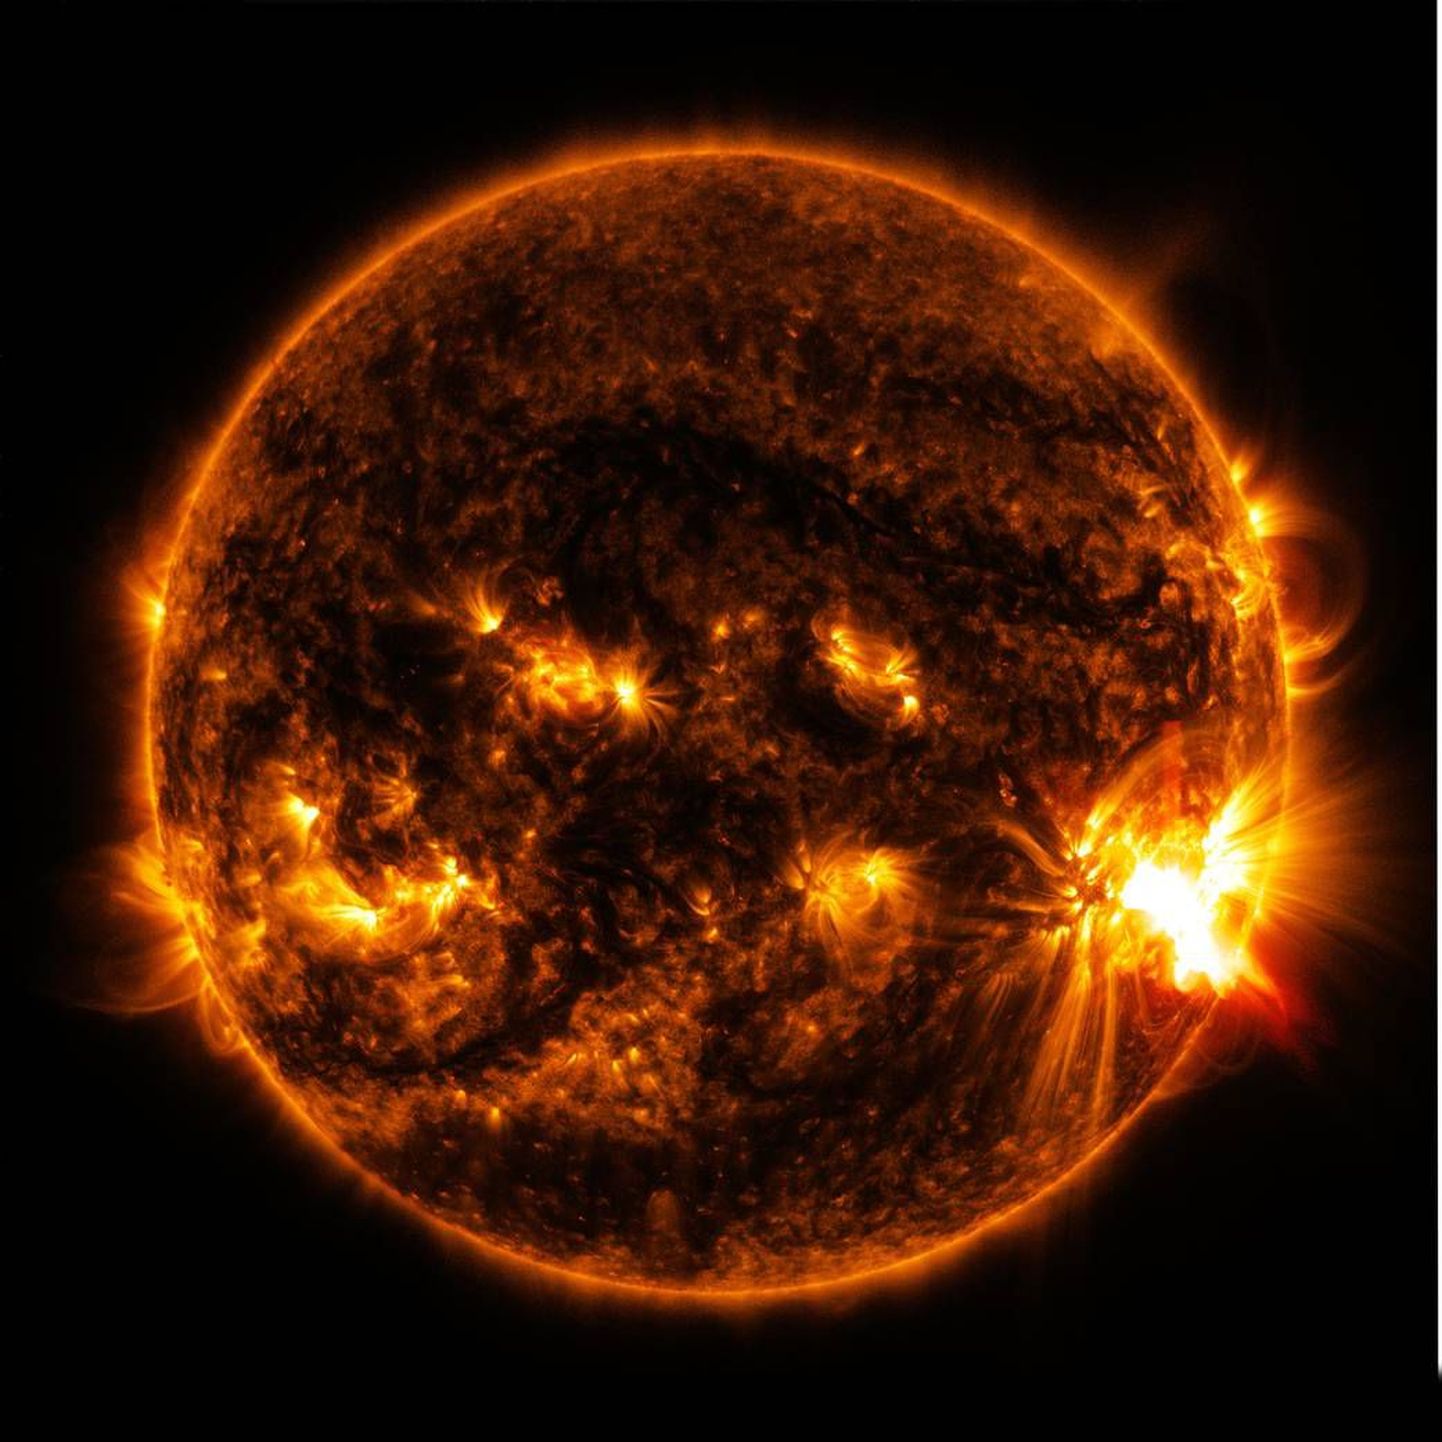 USA teadlaste uuring näitab, et Päikesest välja kiirgavad footonid aeglustavad meie kodutähe väliste kihtide pöörlemiskiirust.